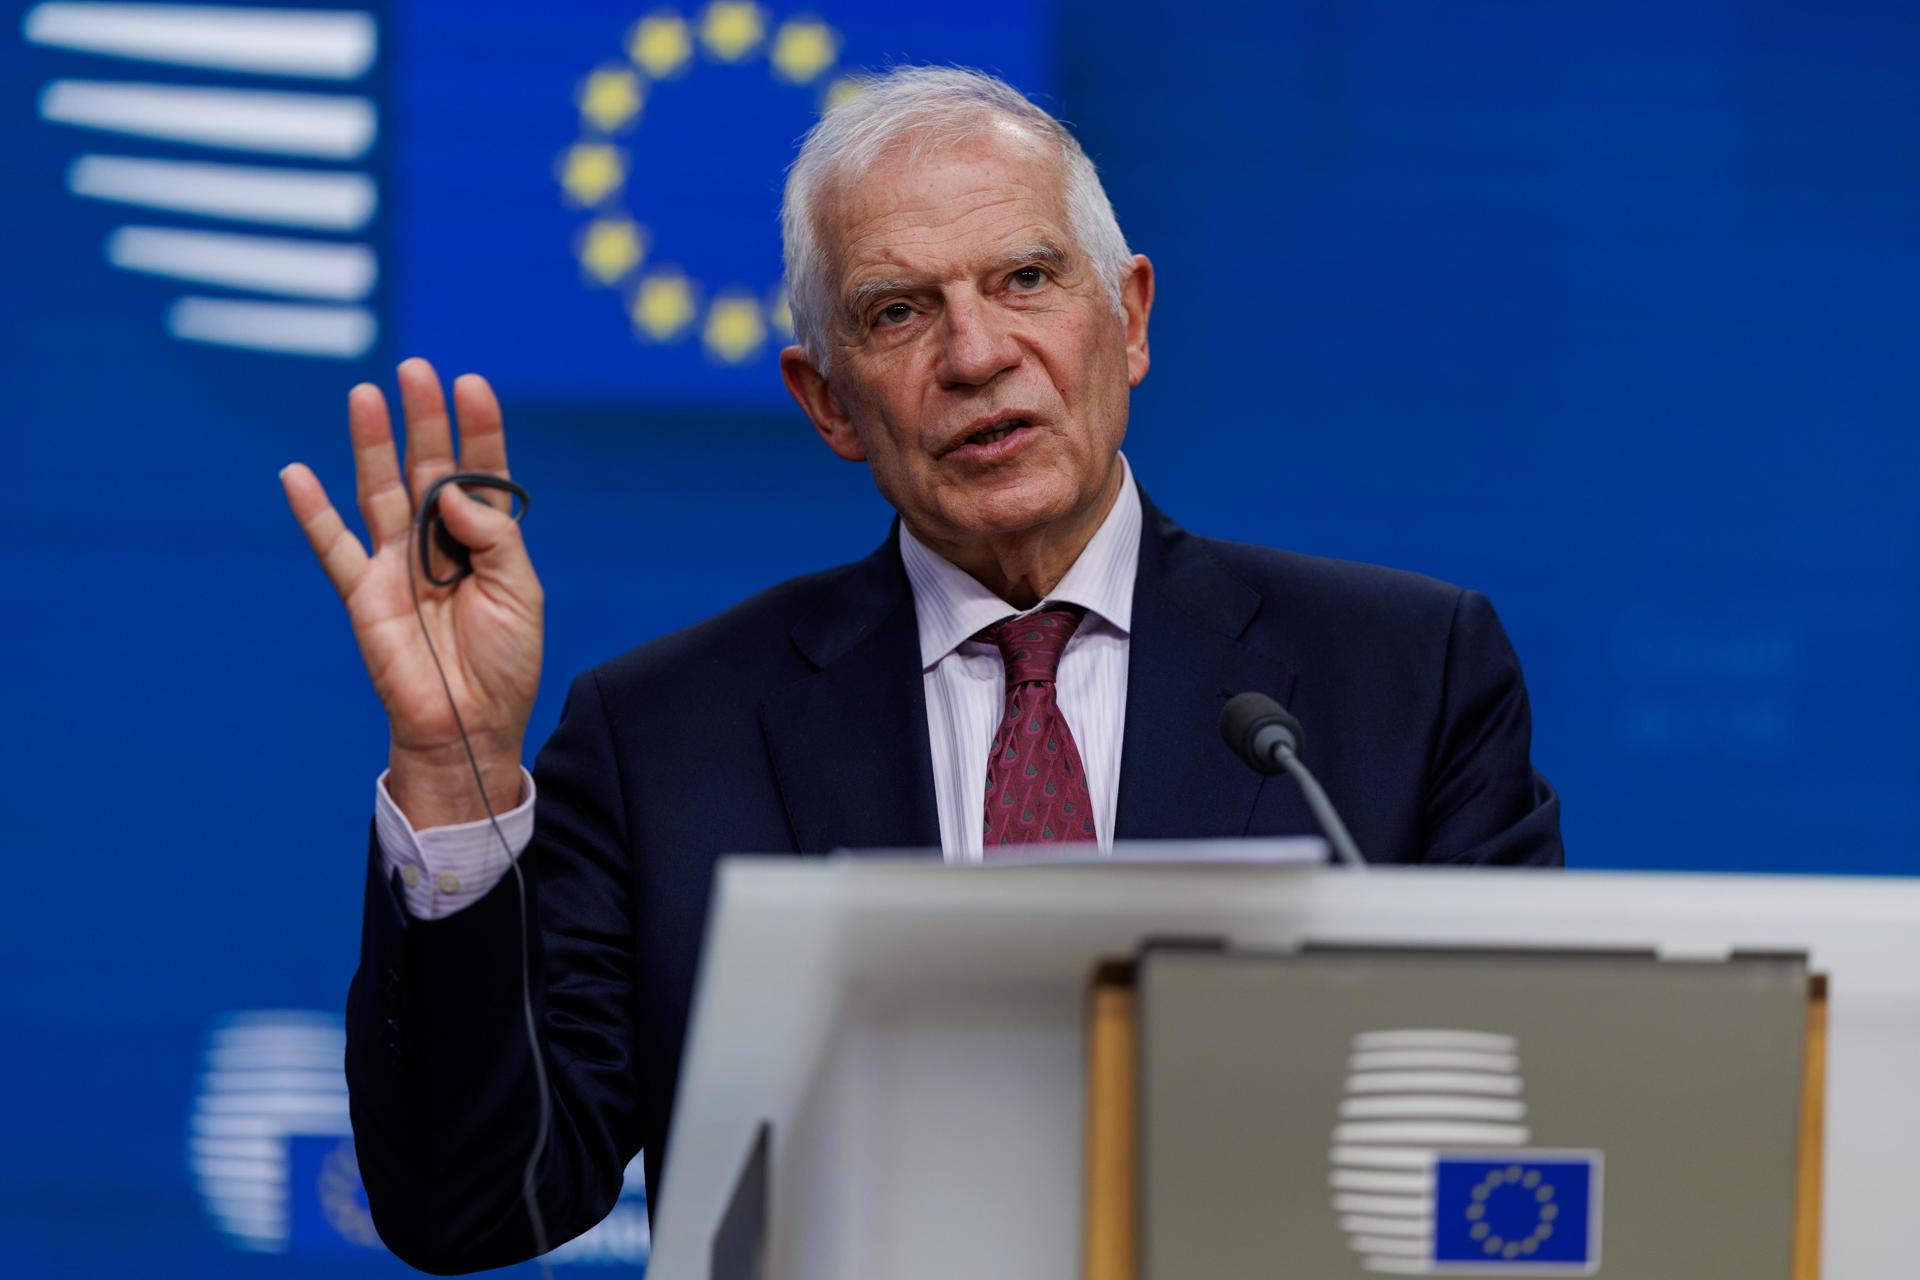 Foto de archivo del alto representante de la Unión Europea (UE) para Asuntos Exteriores, Josep Borrell. EFE/EPA/OLIVIER MATTHYS